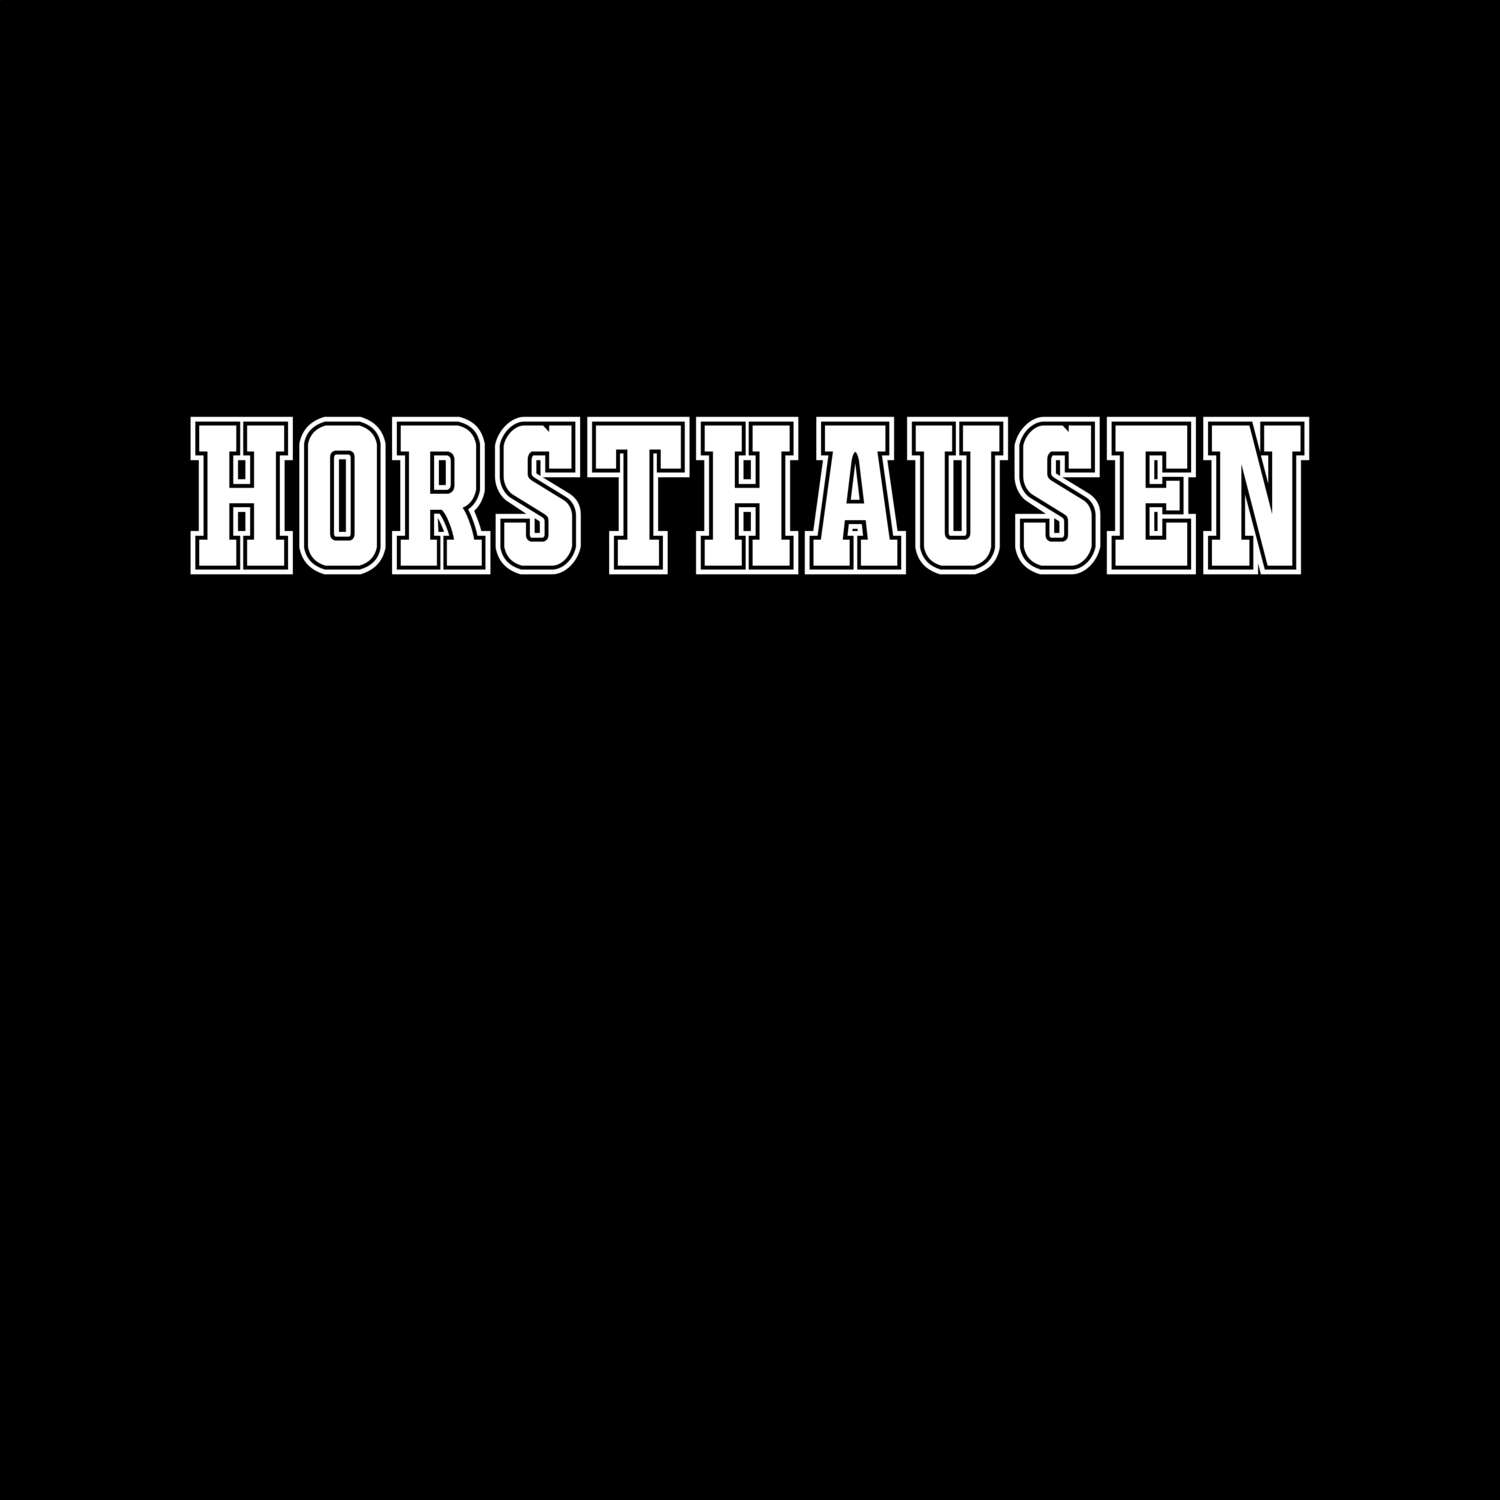 Horsthausen T-Shirt »Classic«